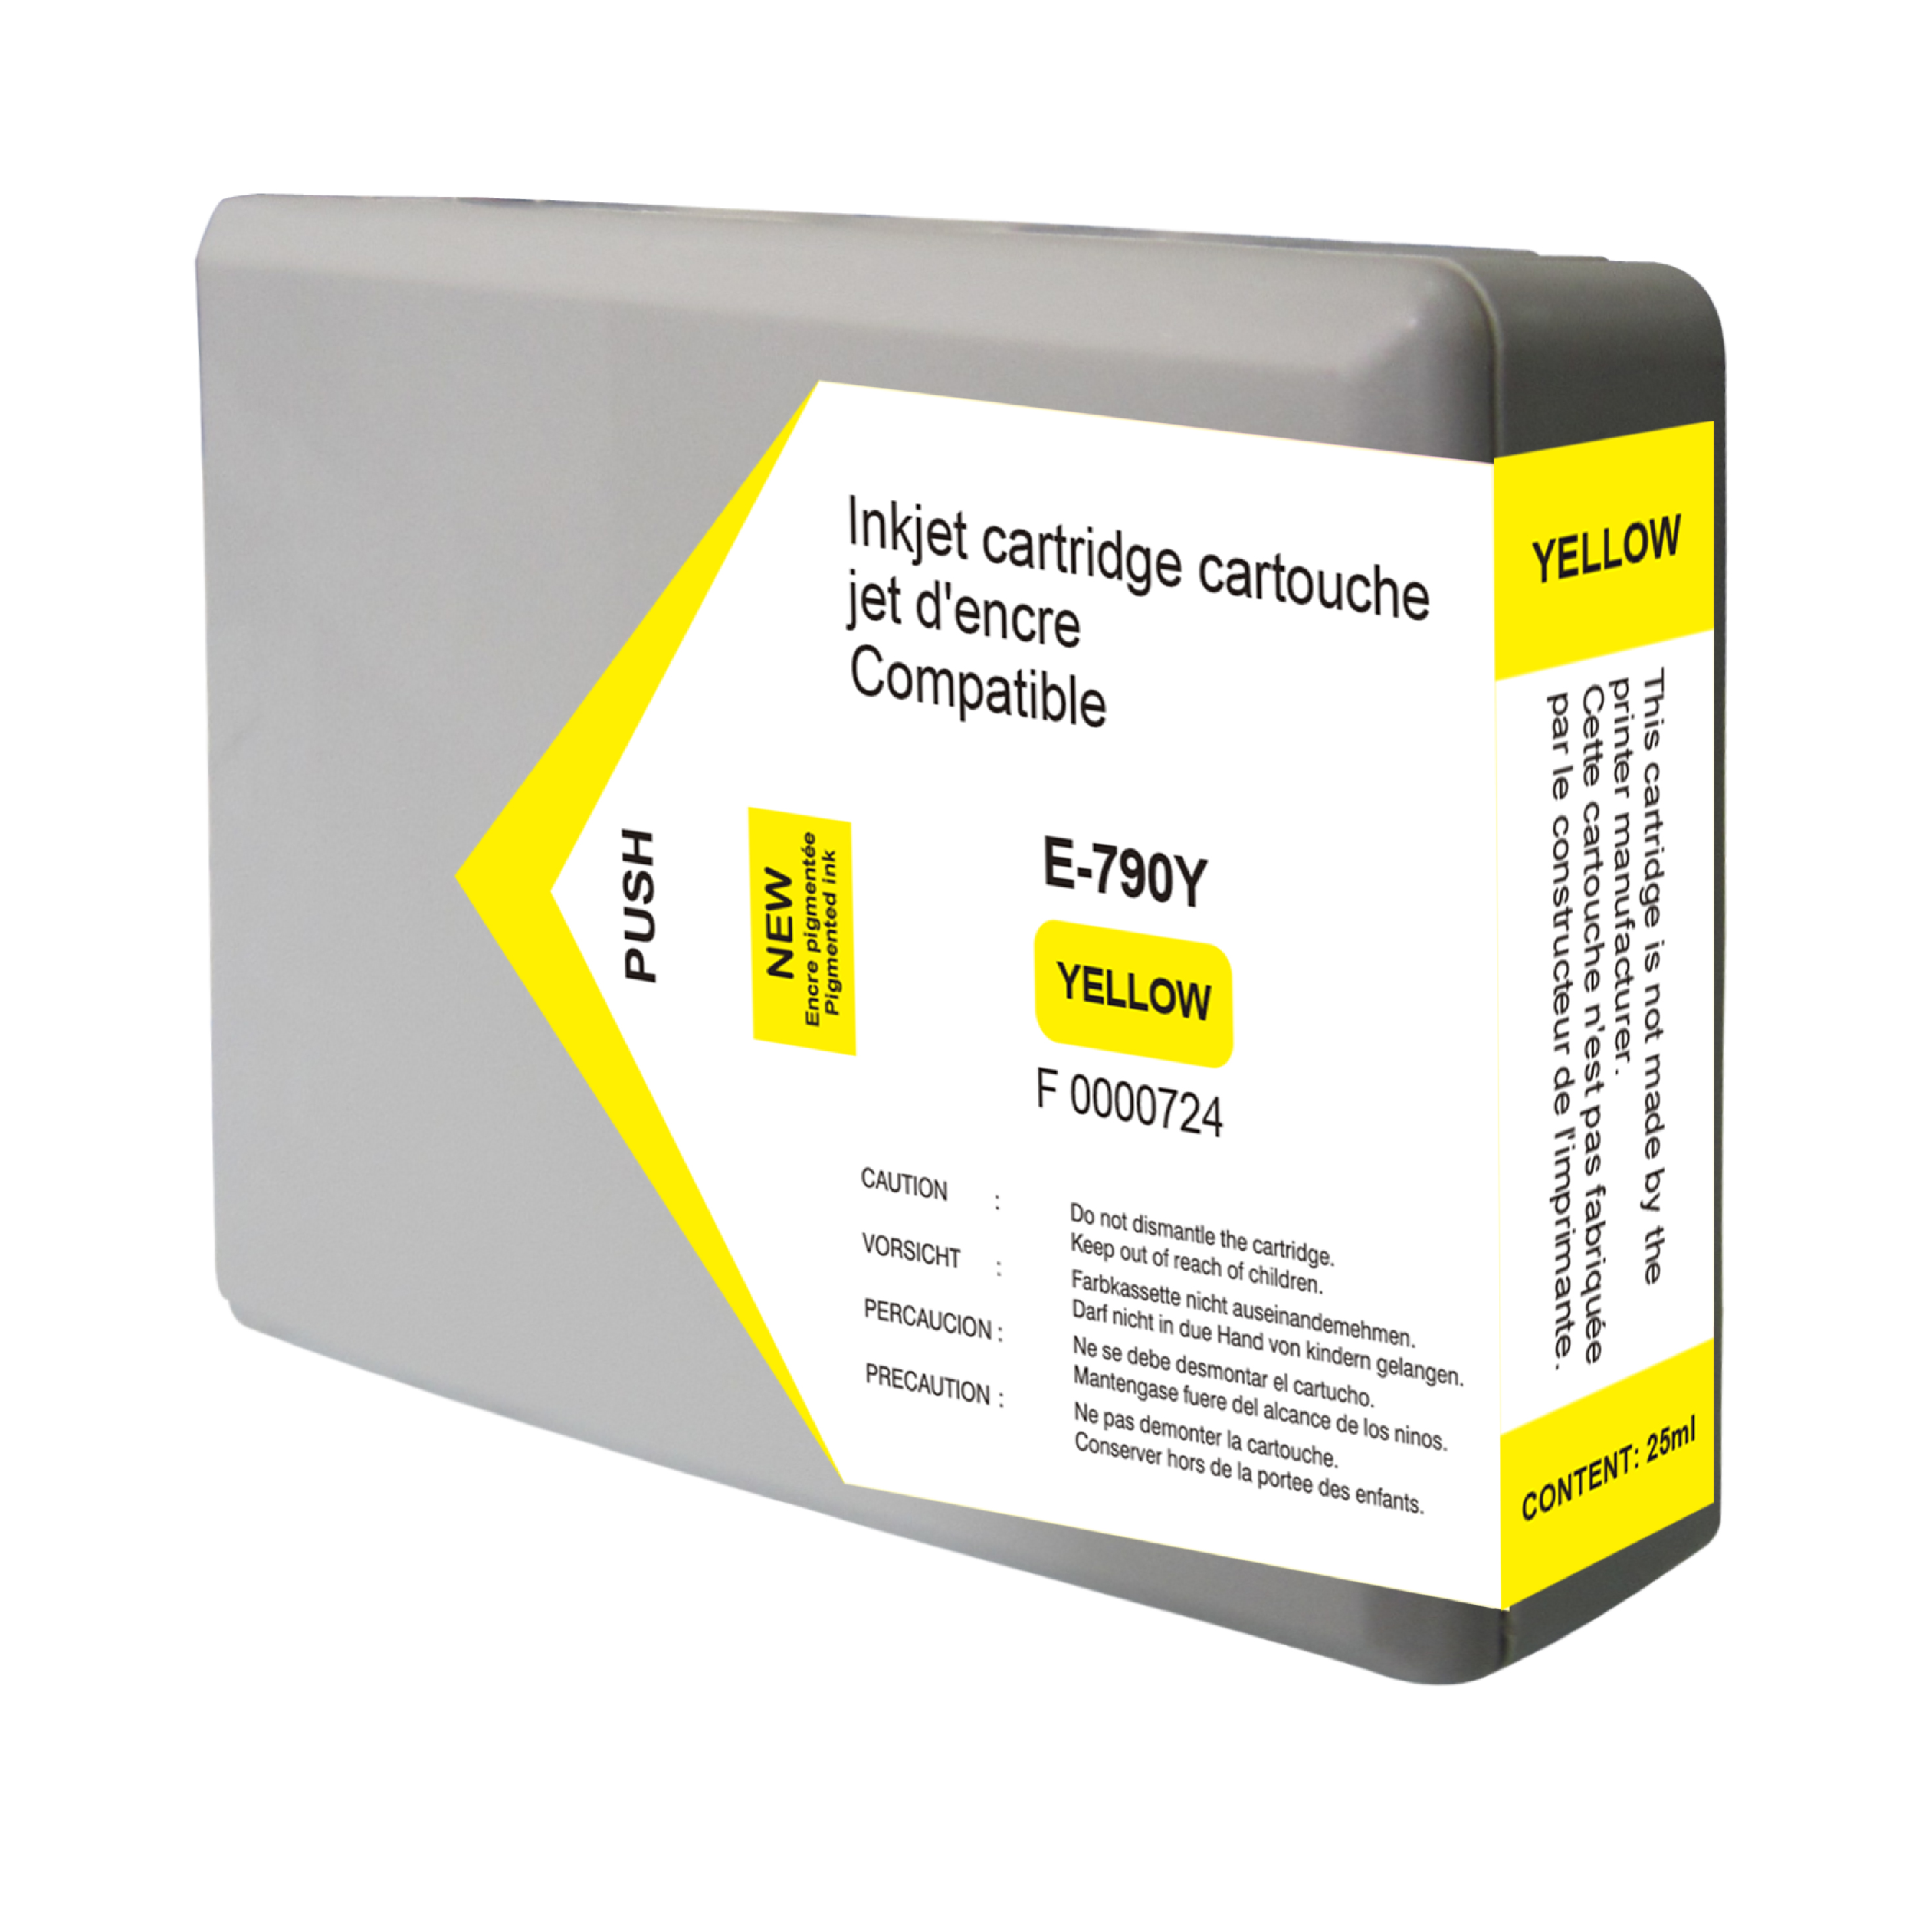 Cartouche d'encre compatible jaune pour imprimante EPSON Epson WF 2860DWF